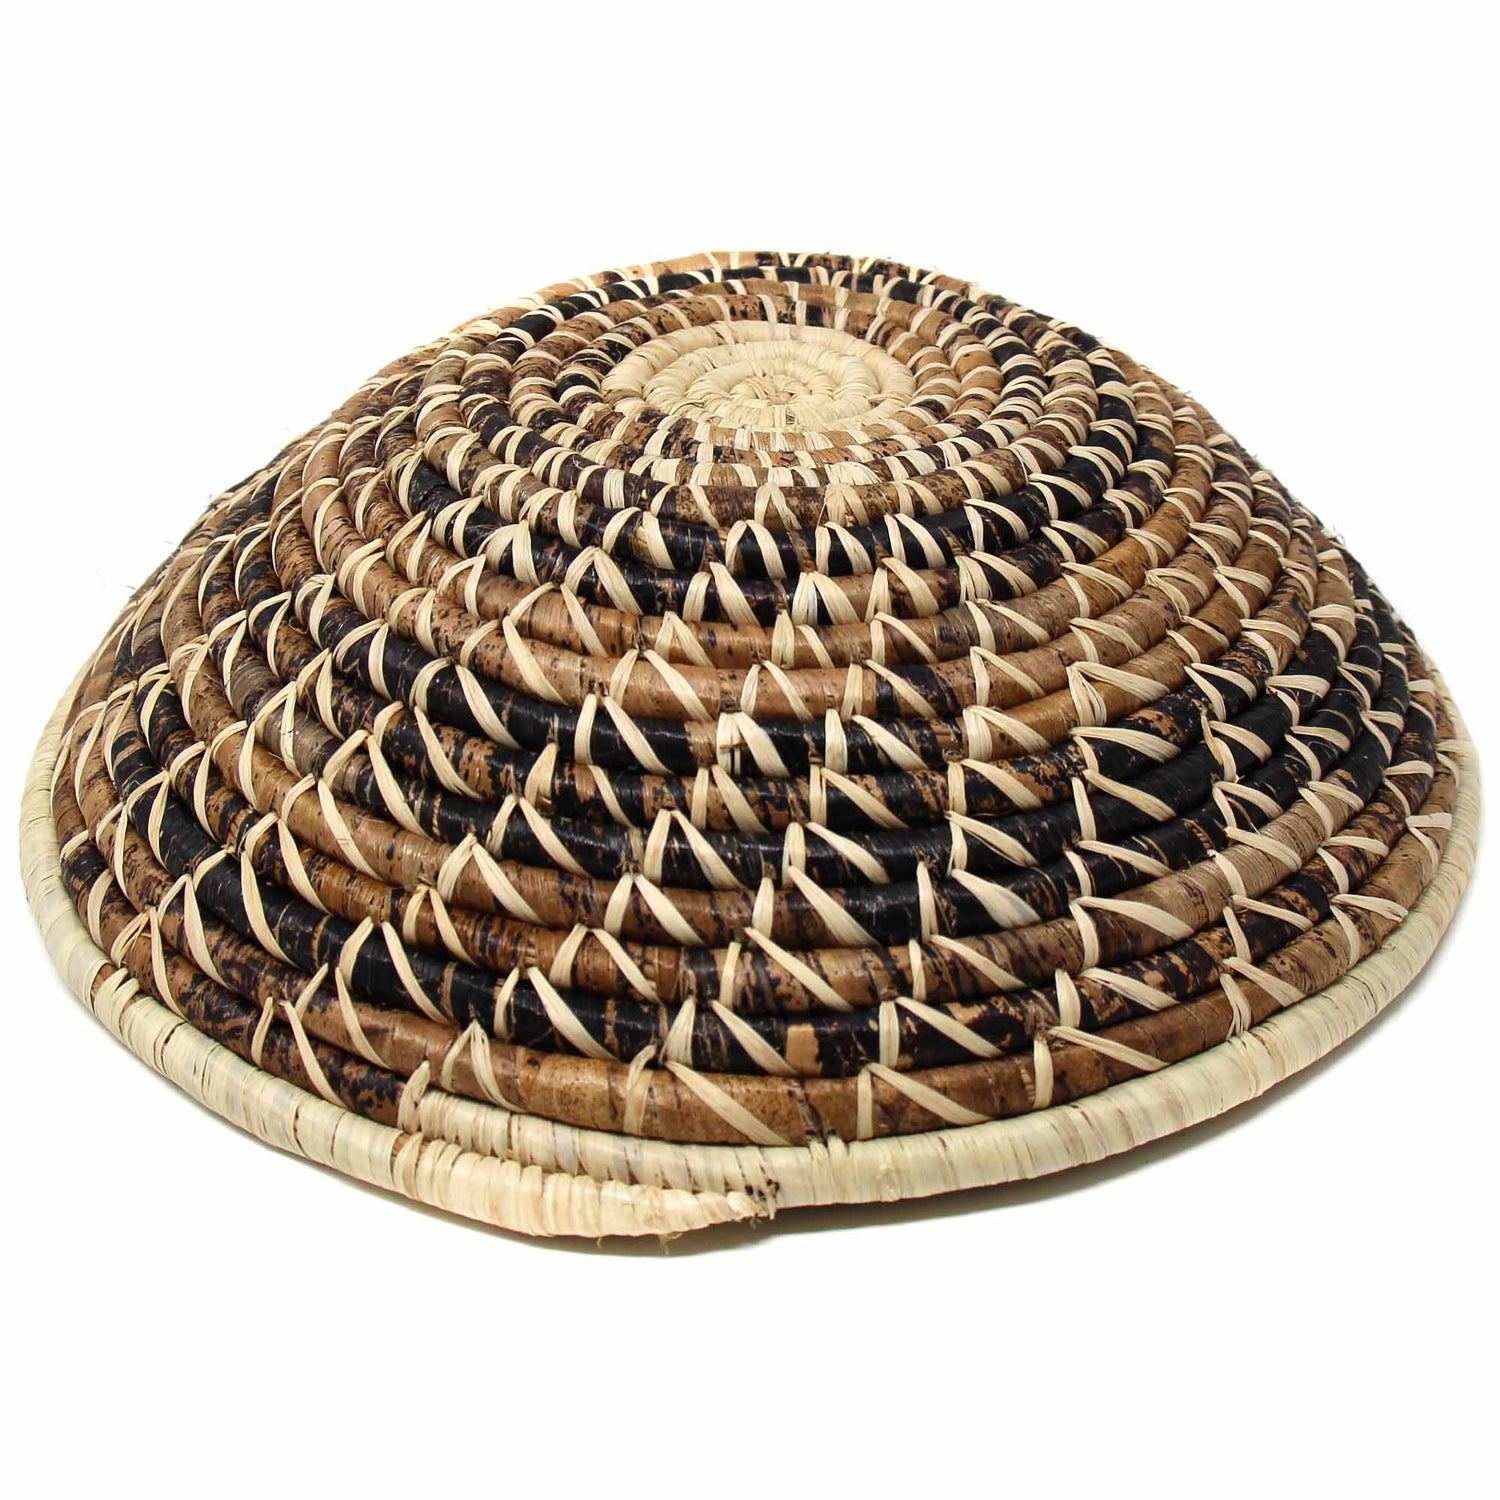 woven-sisal-basket-wheat-stalk-spirals-in-natural